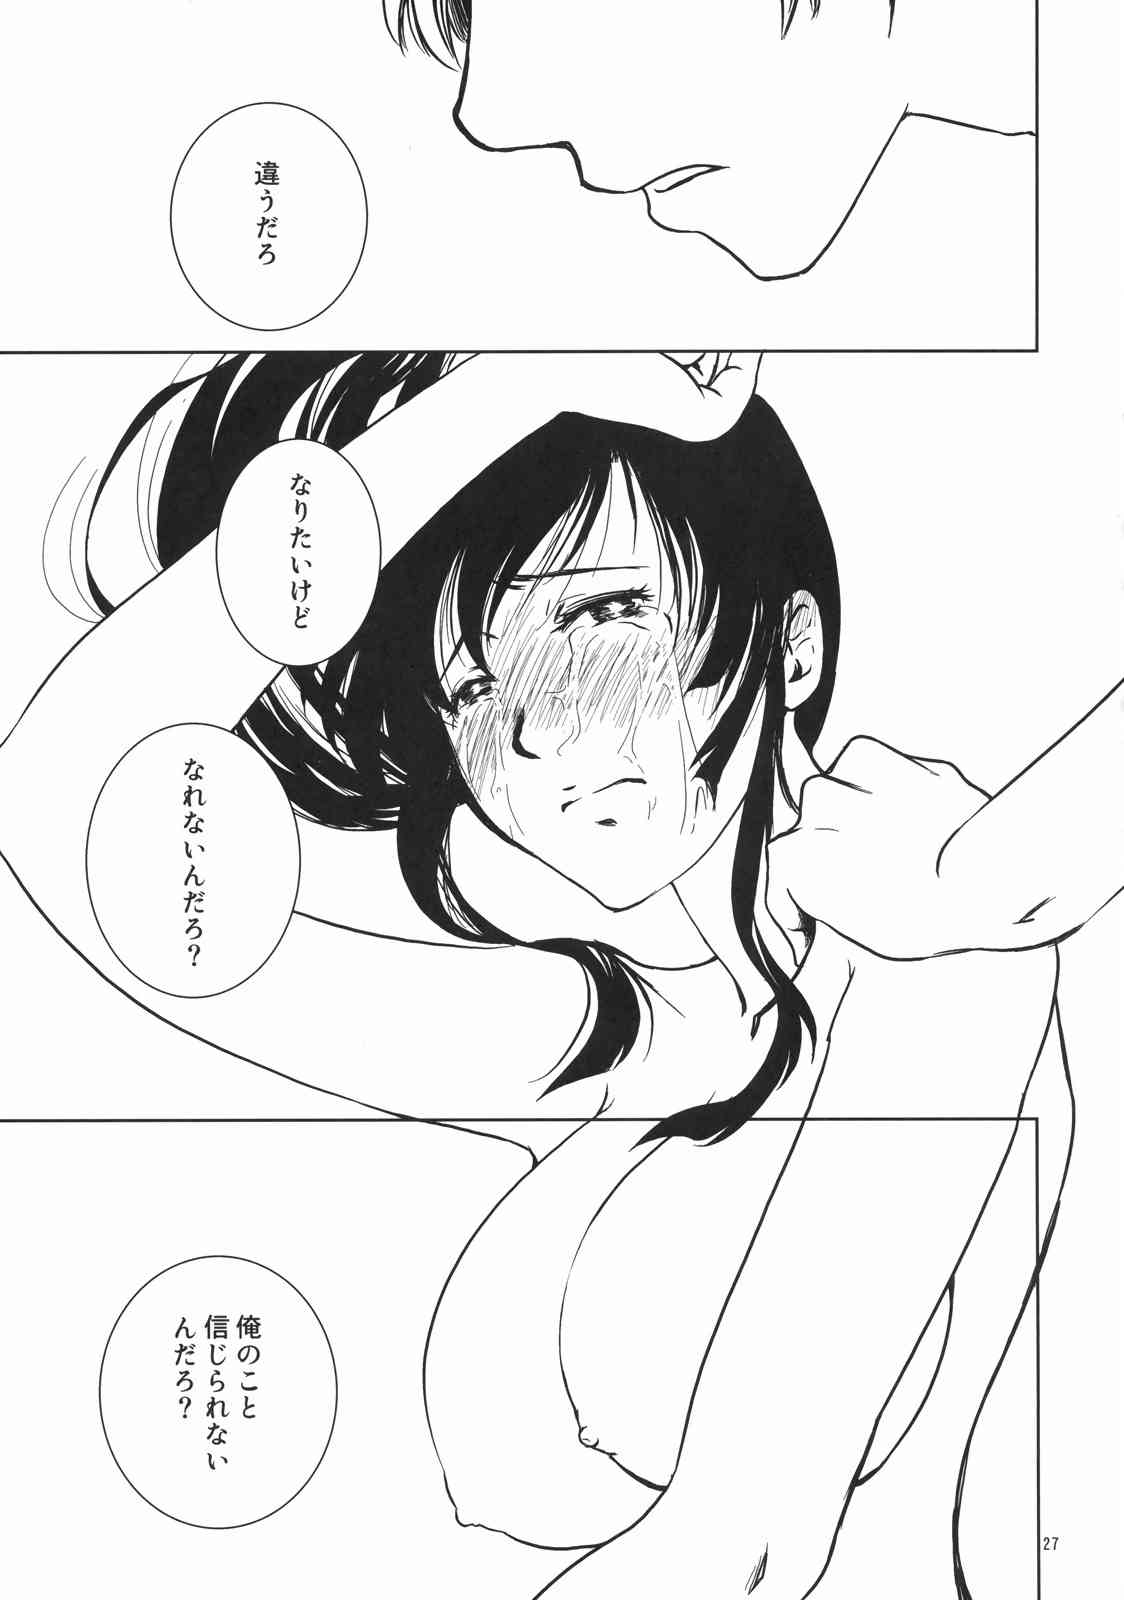 【銀魂】女体化桂と銀さんの初体験イチャラブセックス♡の画像26枚目